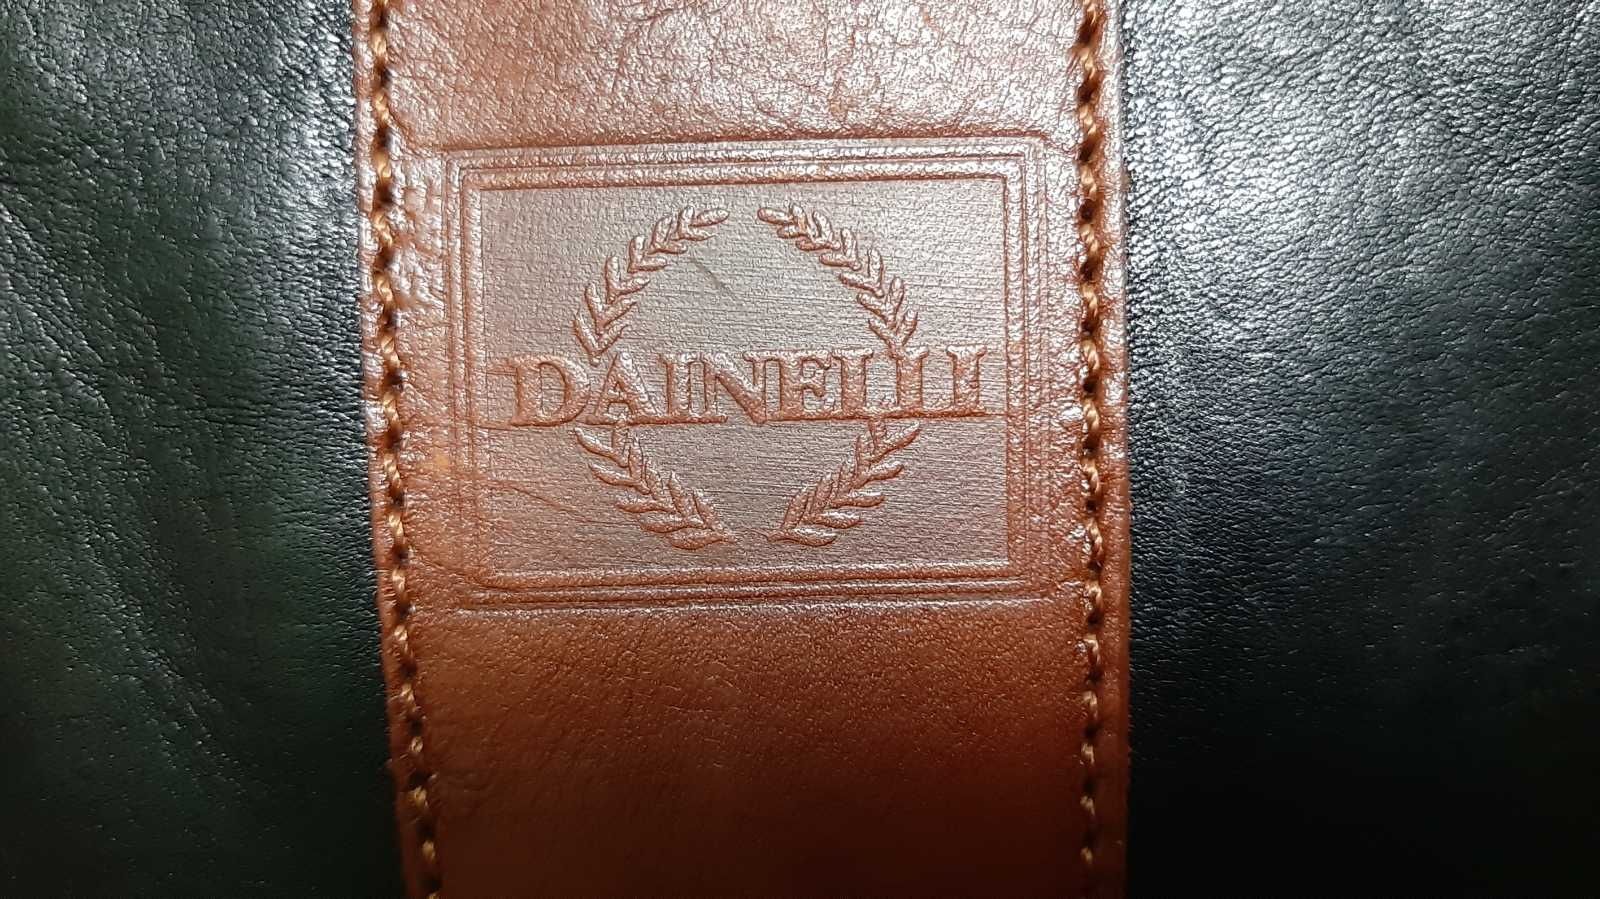 Женская кожаная сумка итальянского бренда Dainelli
Цвет чёрный